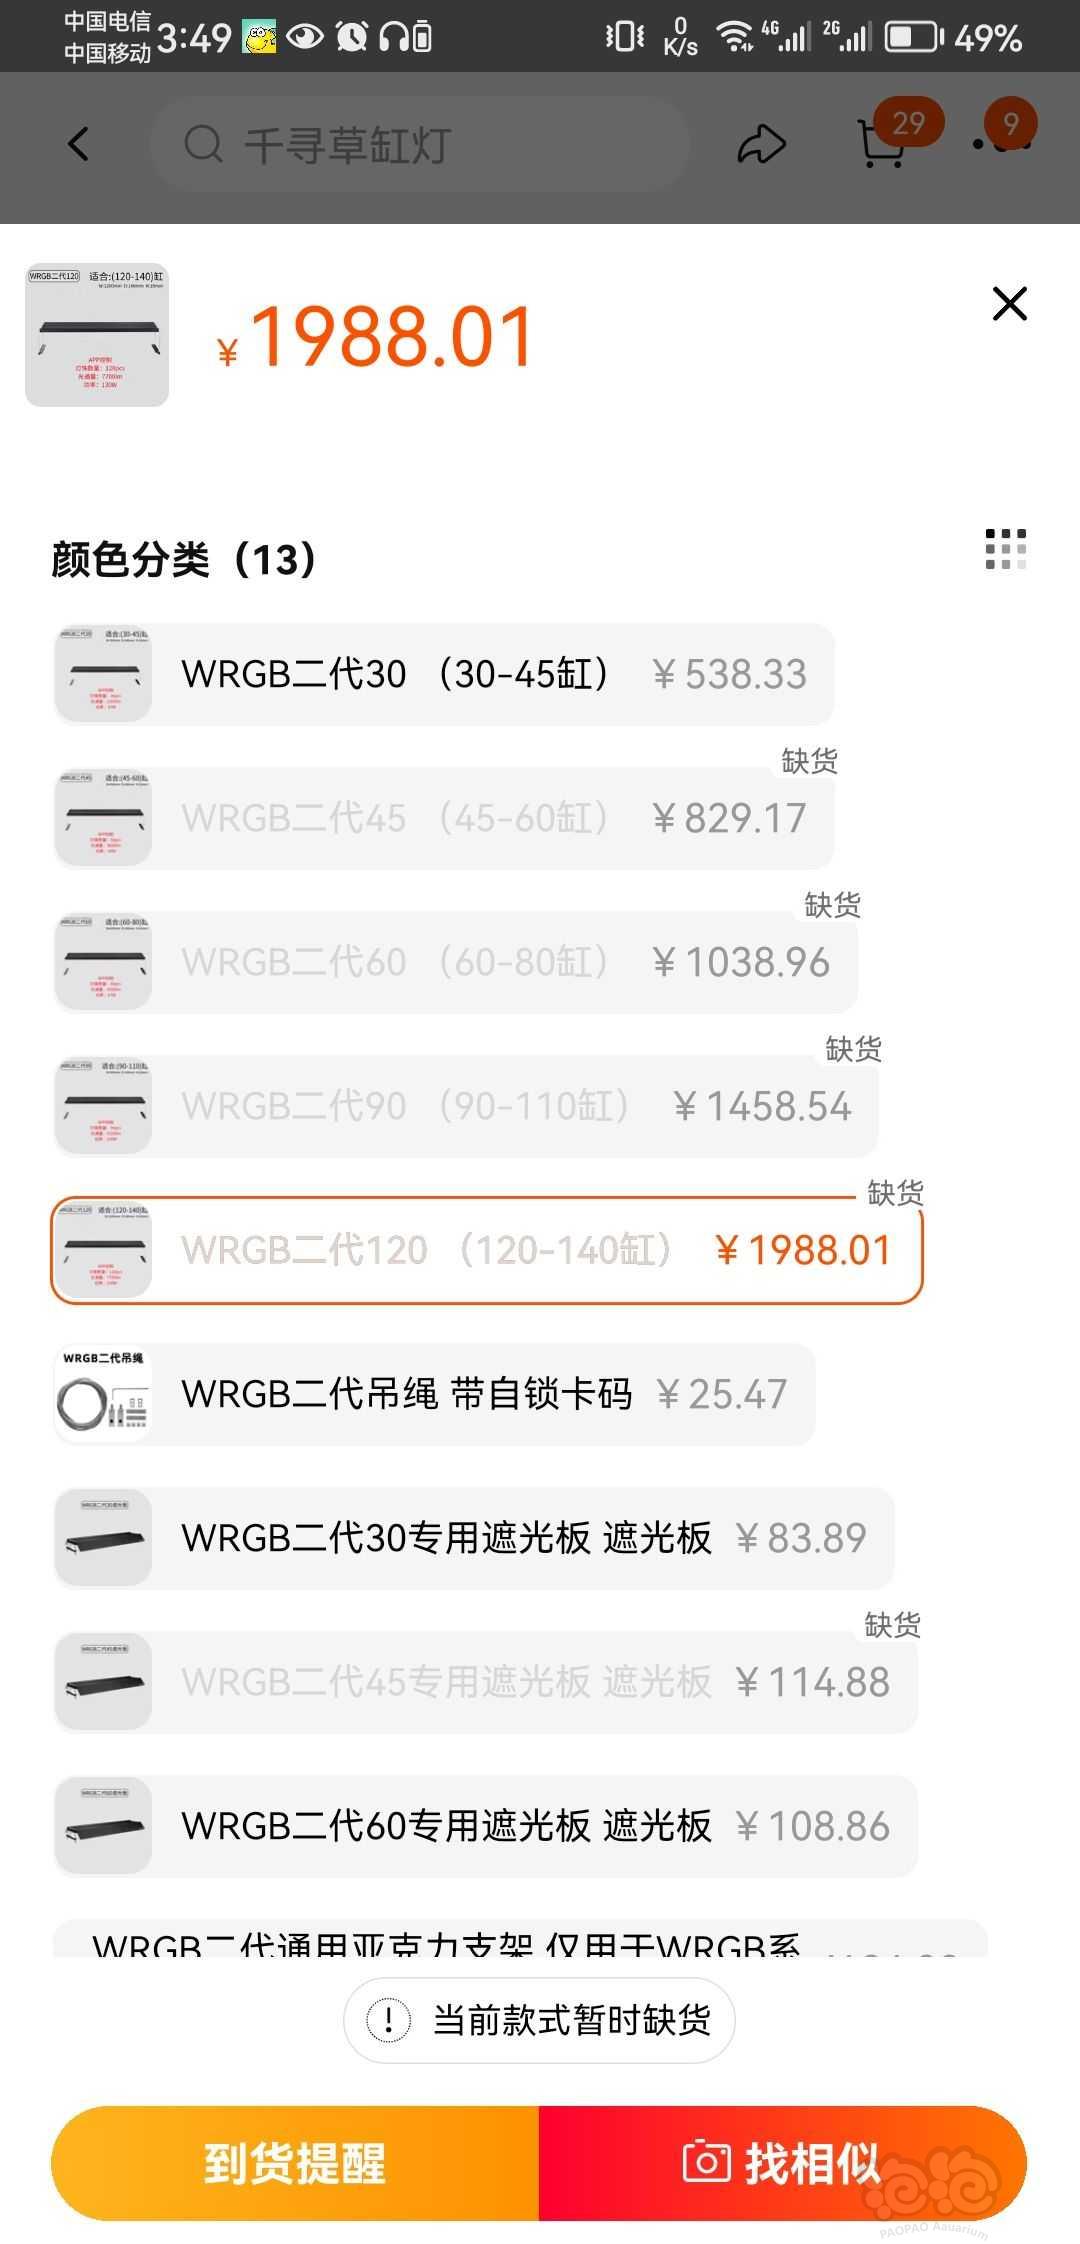 【出售】低价出千寻WRGB二代1.2米专业水草灯 1180到付-图2